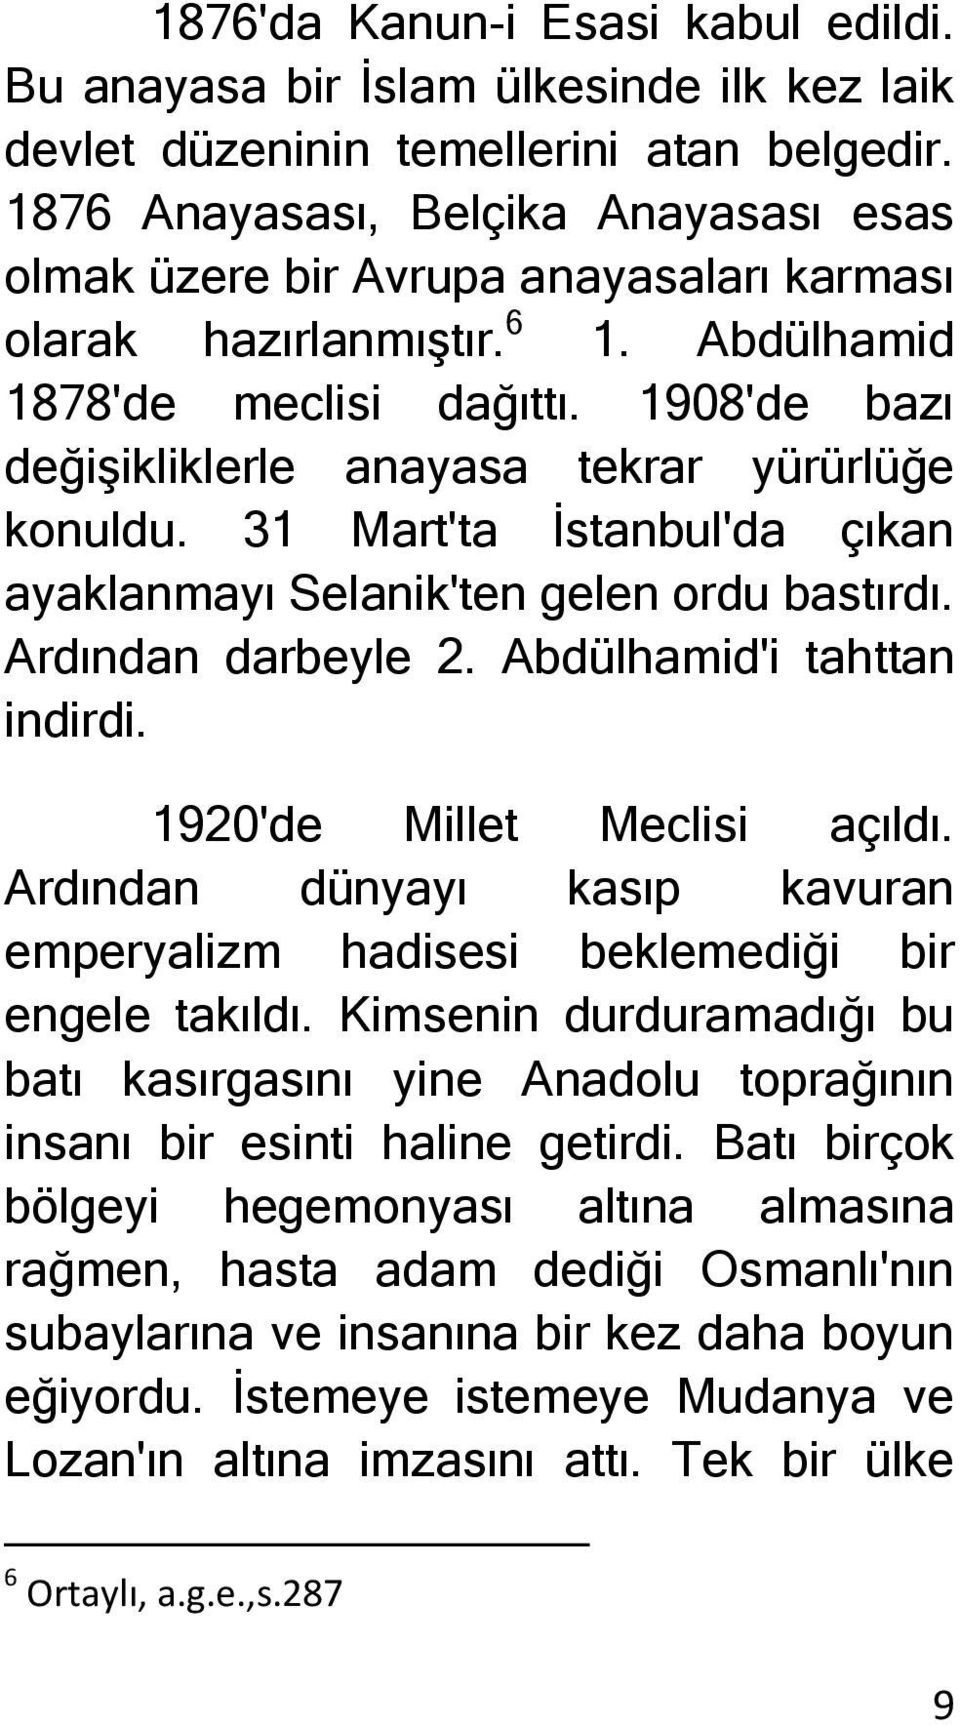 1908'de bazı değişikliklerle anayasa tekrar yürürlüğe konuldu. 31 Mart'ta İstanbul'da çıkan ayaklanmayı Selanik'ten gelen ordu bastırdı. Ardından darbeyle 2. Abdülhamid'i tahttan indirdi.